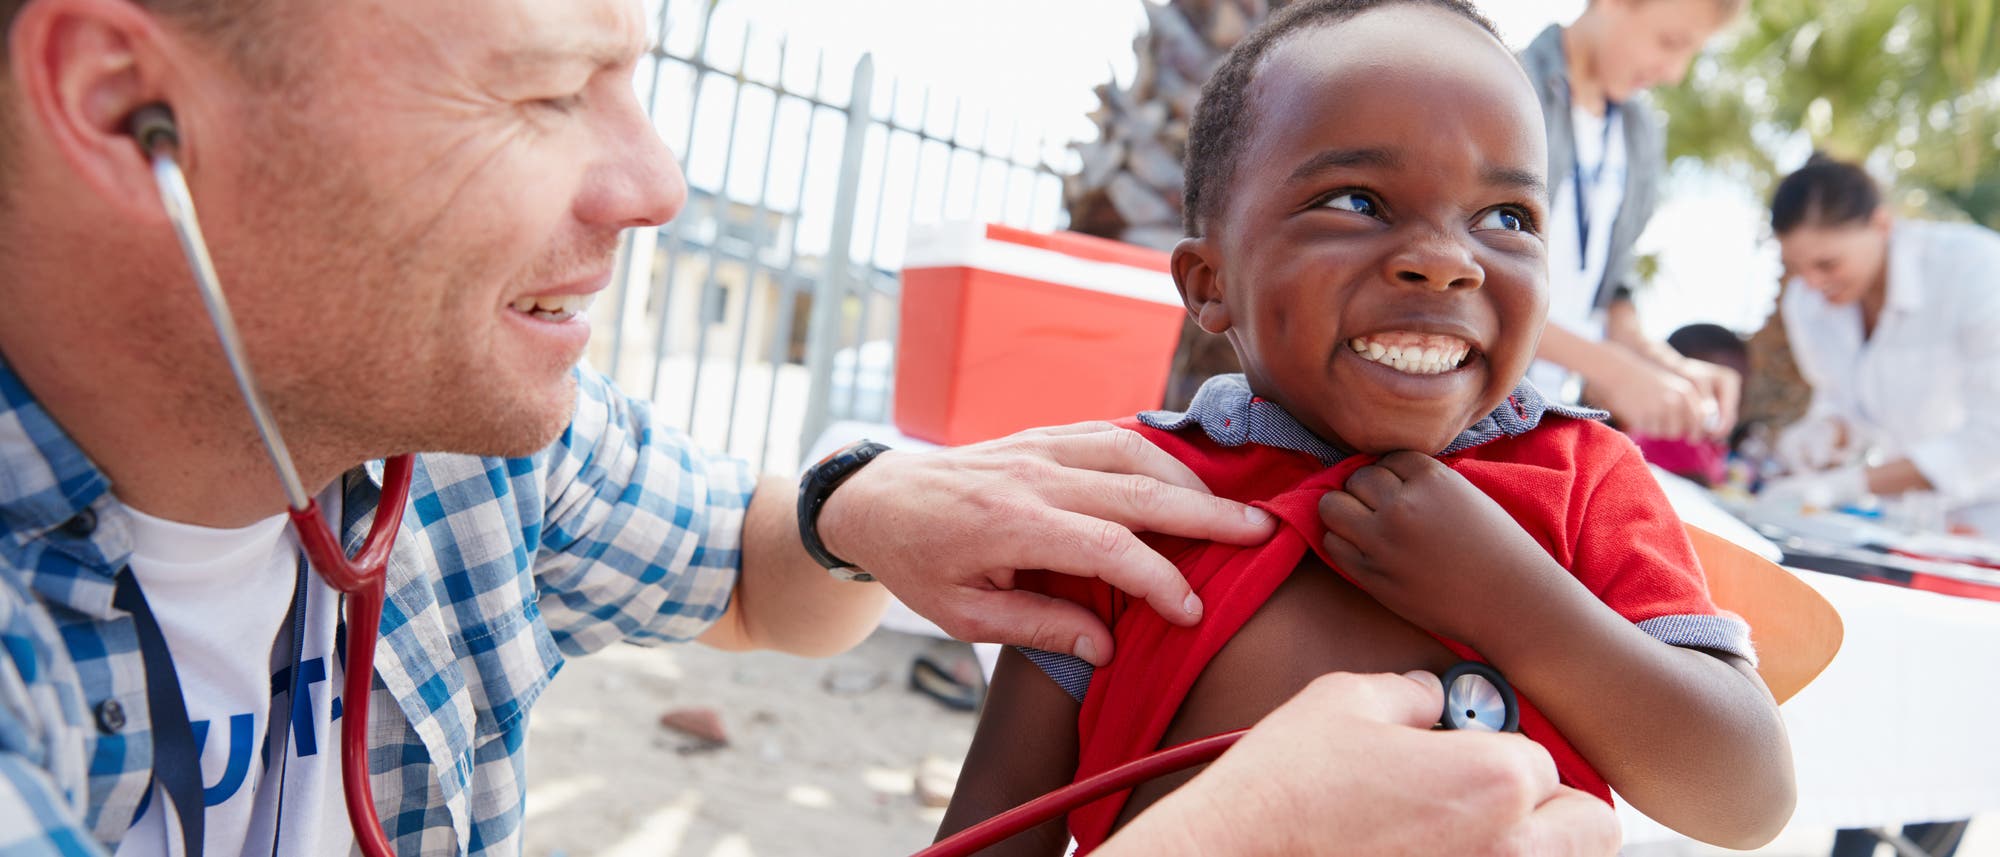 Arzt untersucht Kind in Afrika